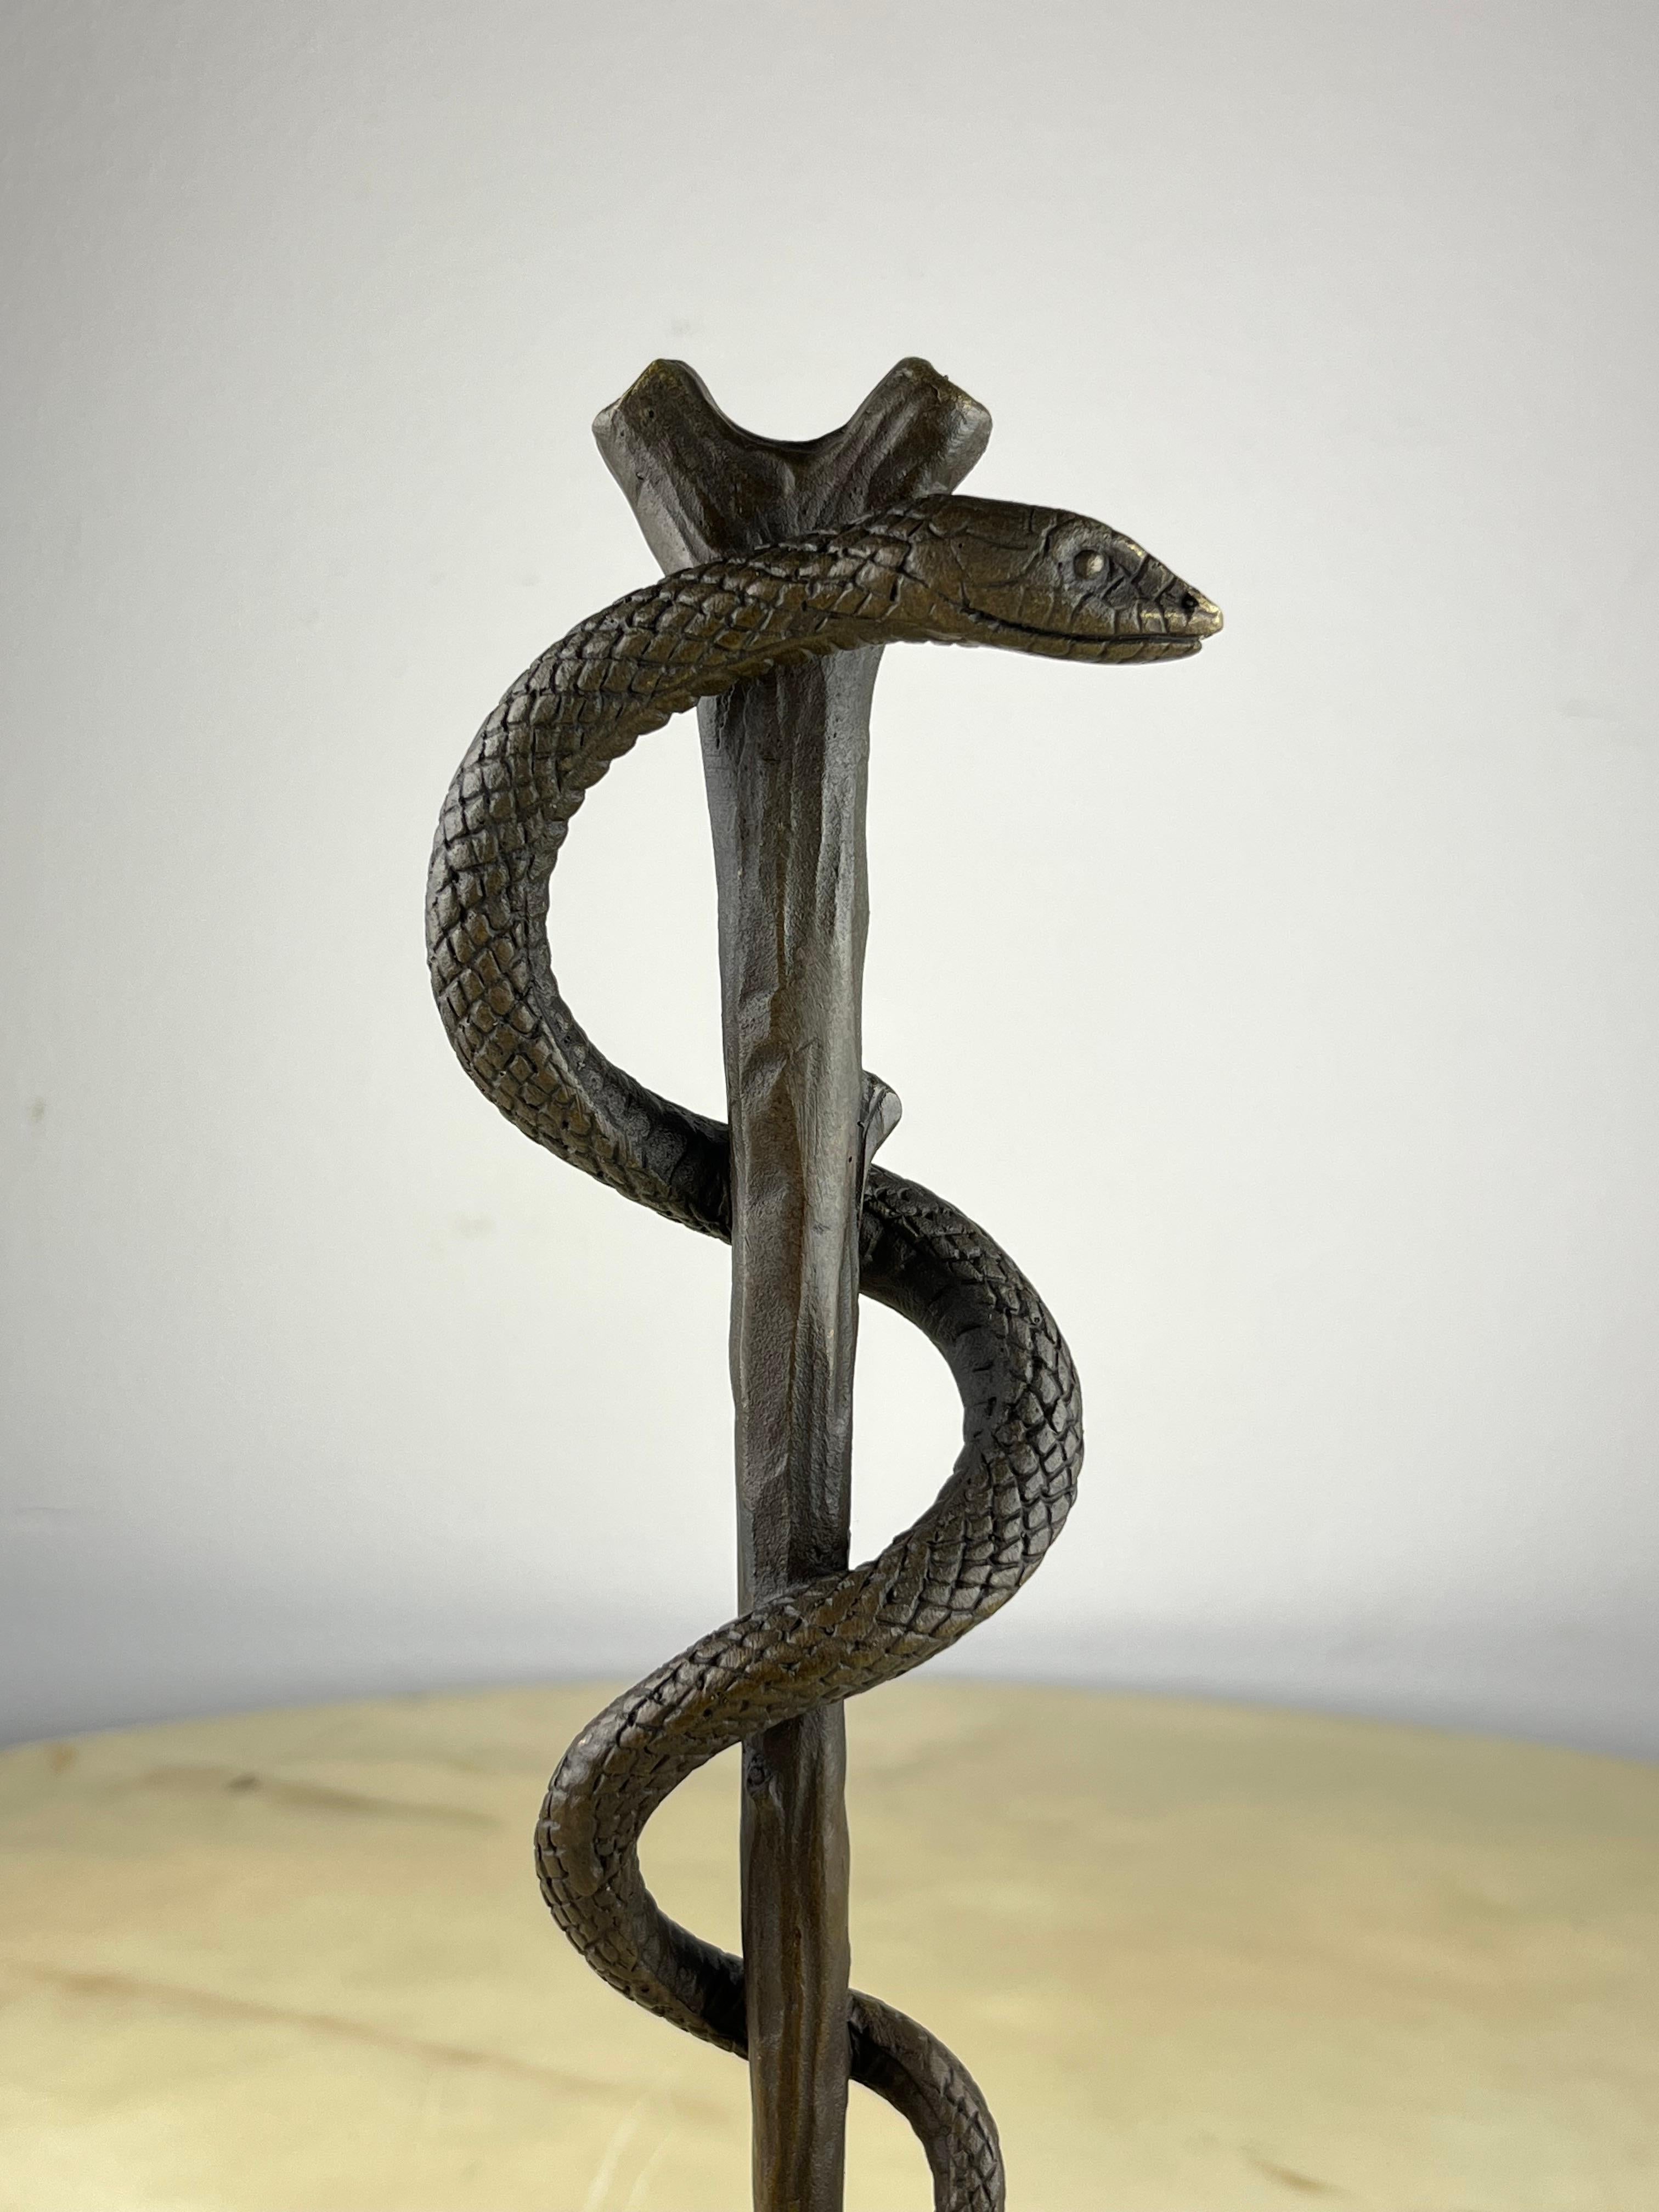 Äskulapstab aus Bronze und Marmor, Frankreich, 1990er Jahre
Es ist ein altgriechisches Symbol, das mit der Medizin in Verbindung gebracht wird. Sie besteht aus einer Schlange, die um einen Stab gewickelt ist. Sie symbolisiert die Gesundheitskünste,